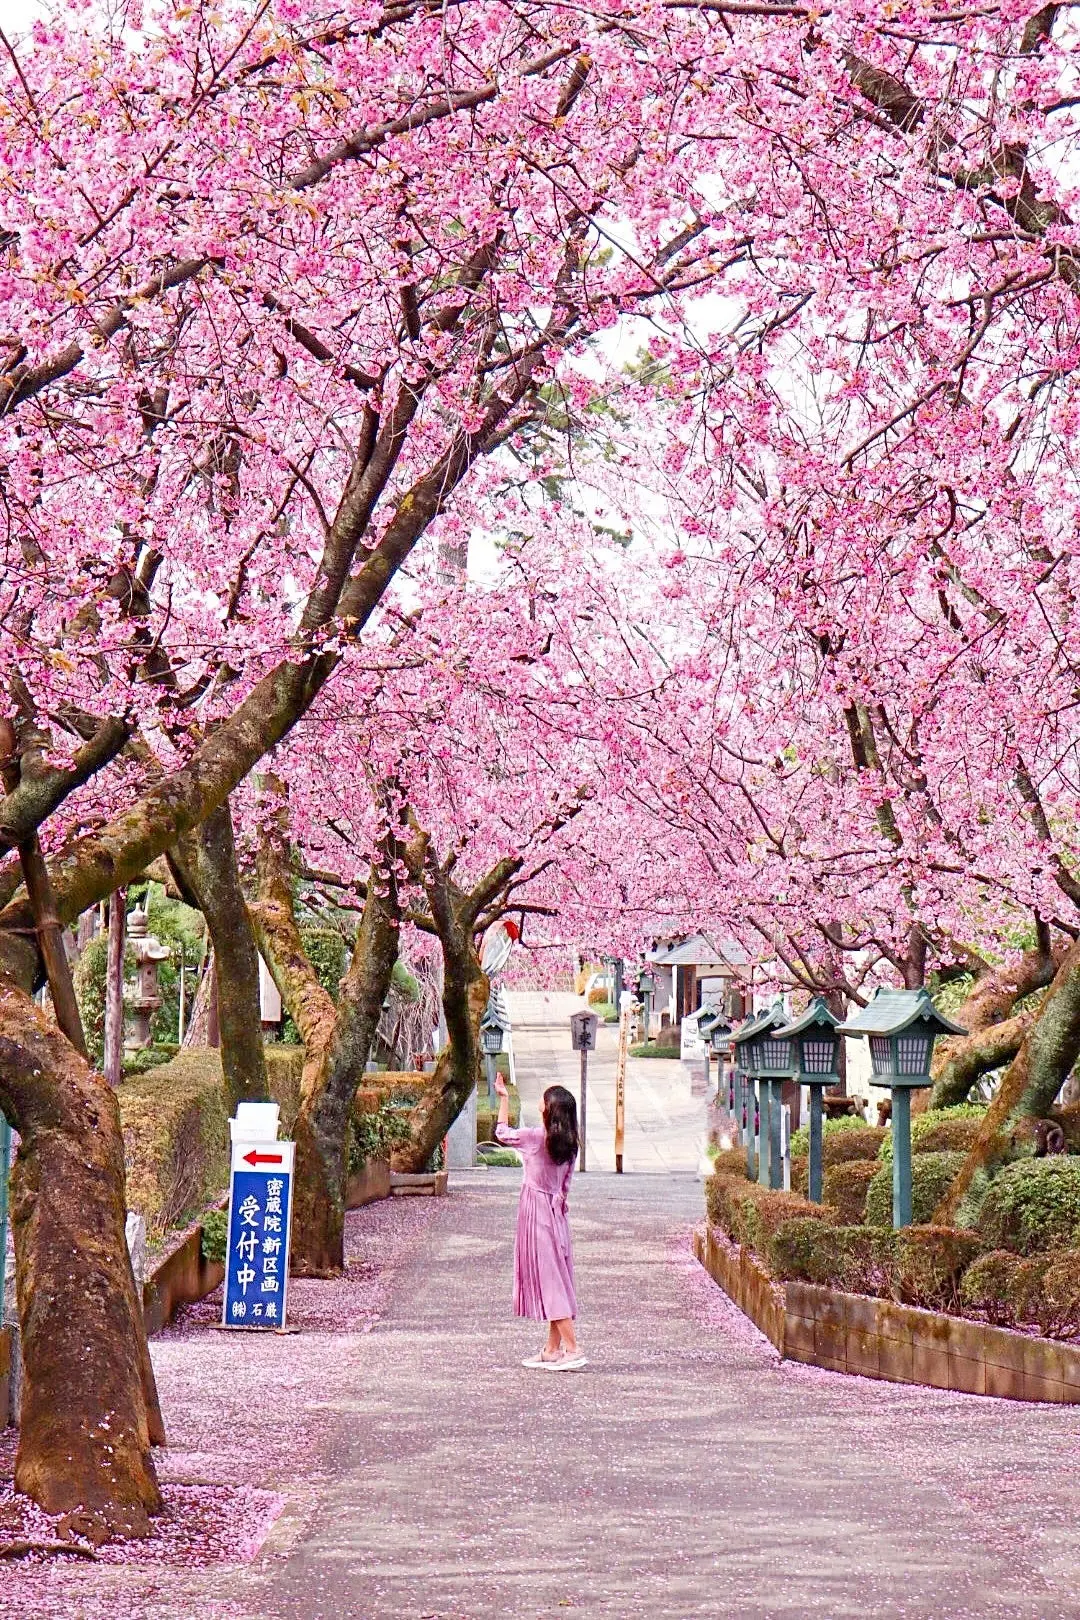 【埼玉】穴場桜スポットでお花見を楽しもうの画像_2